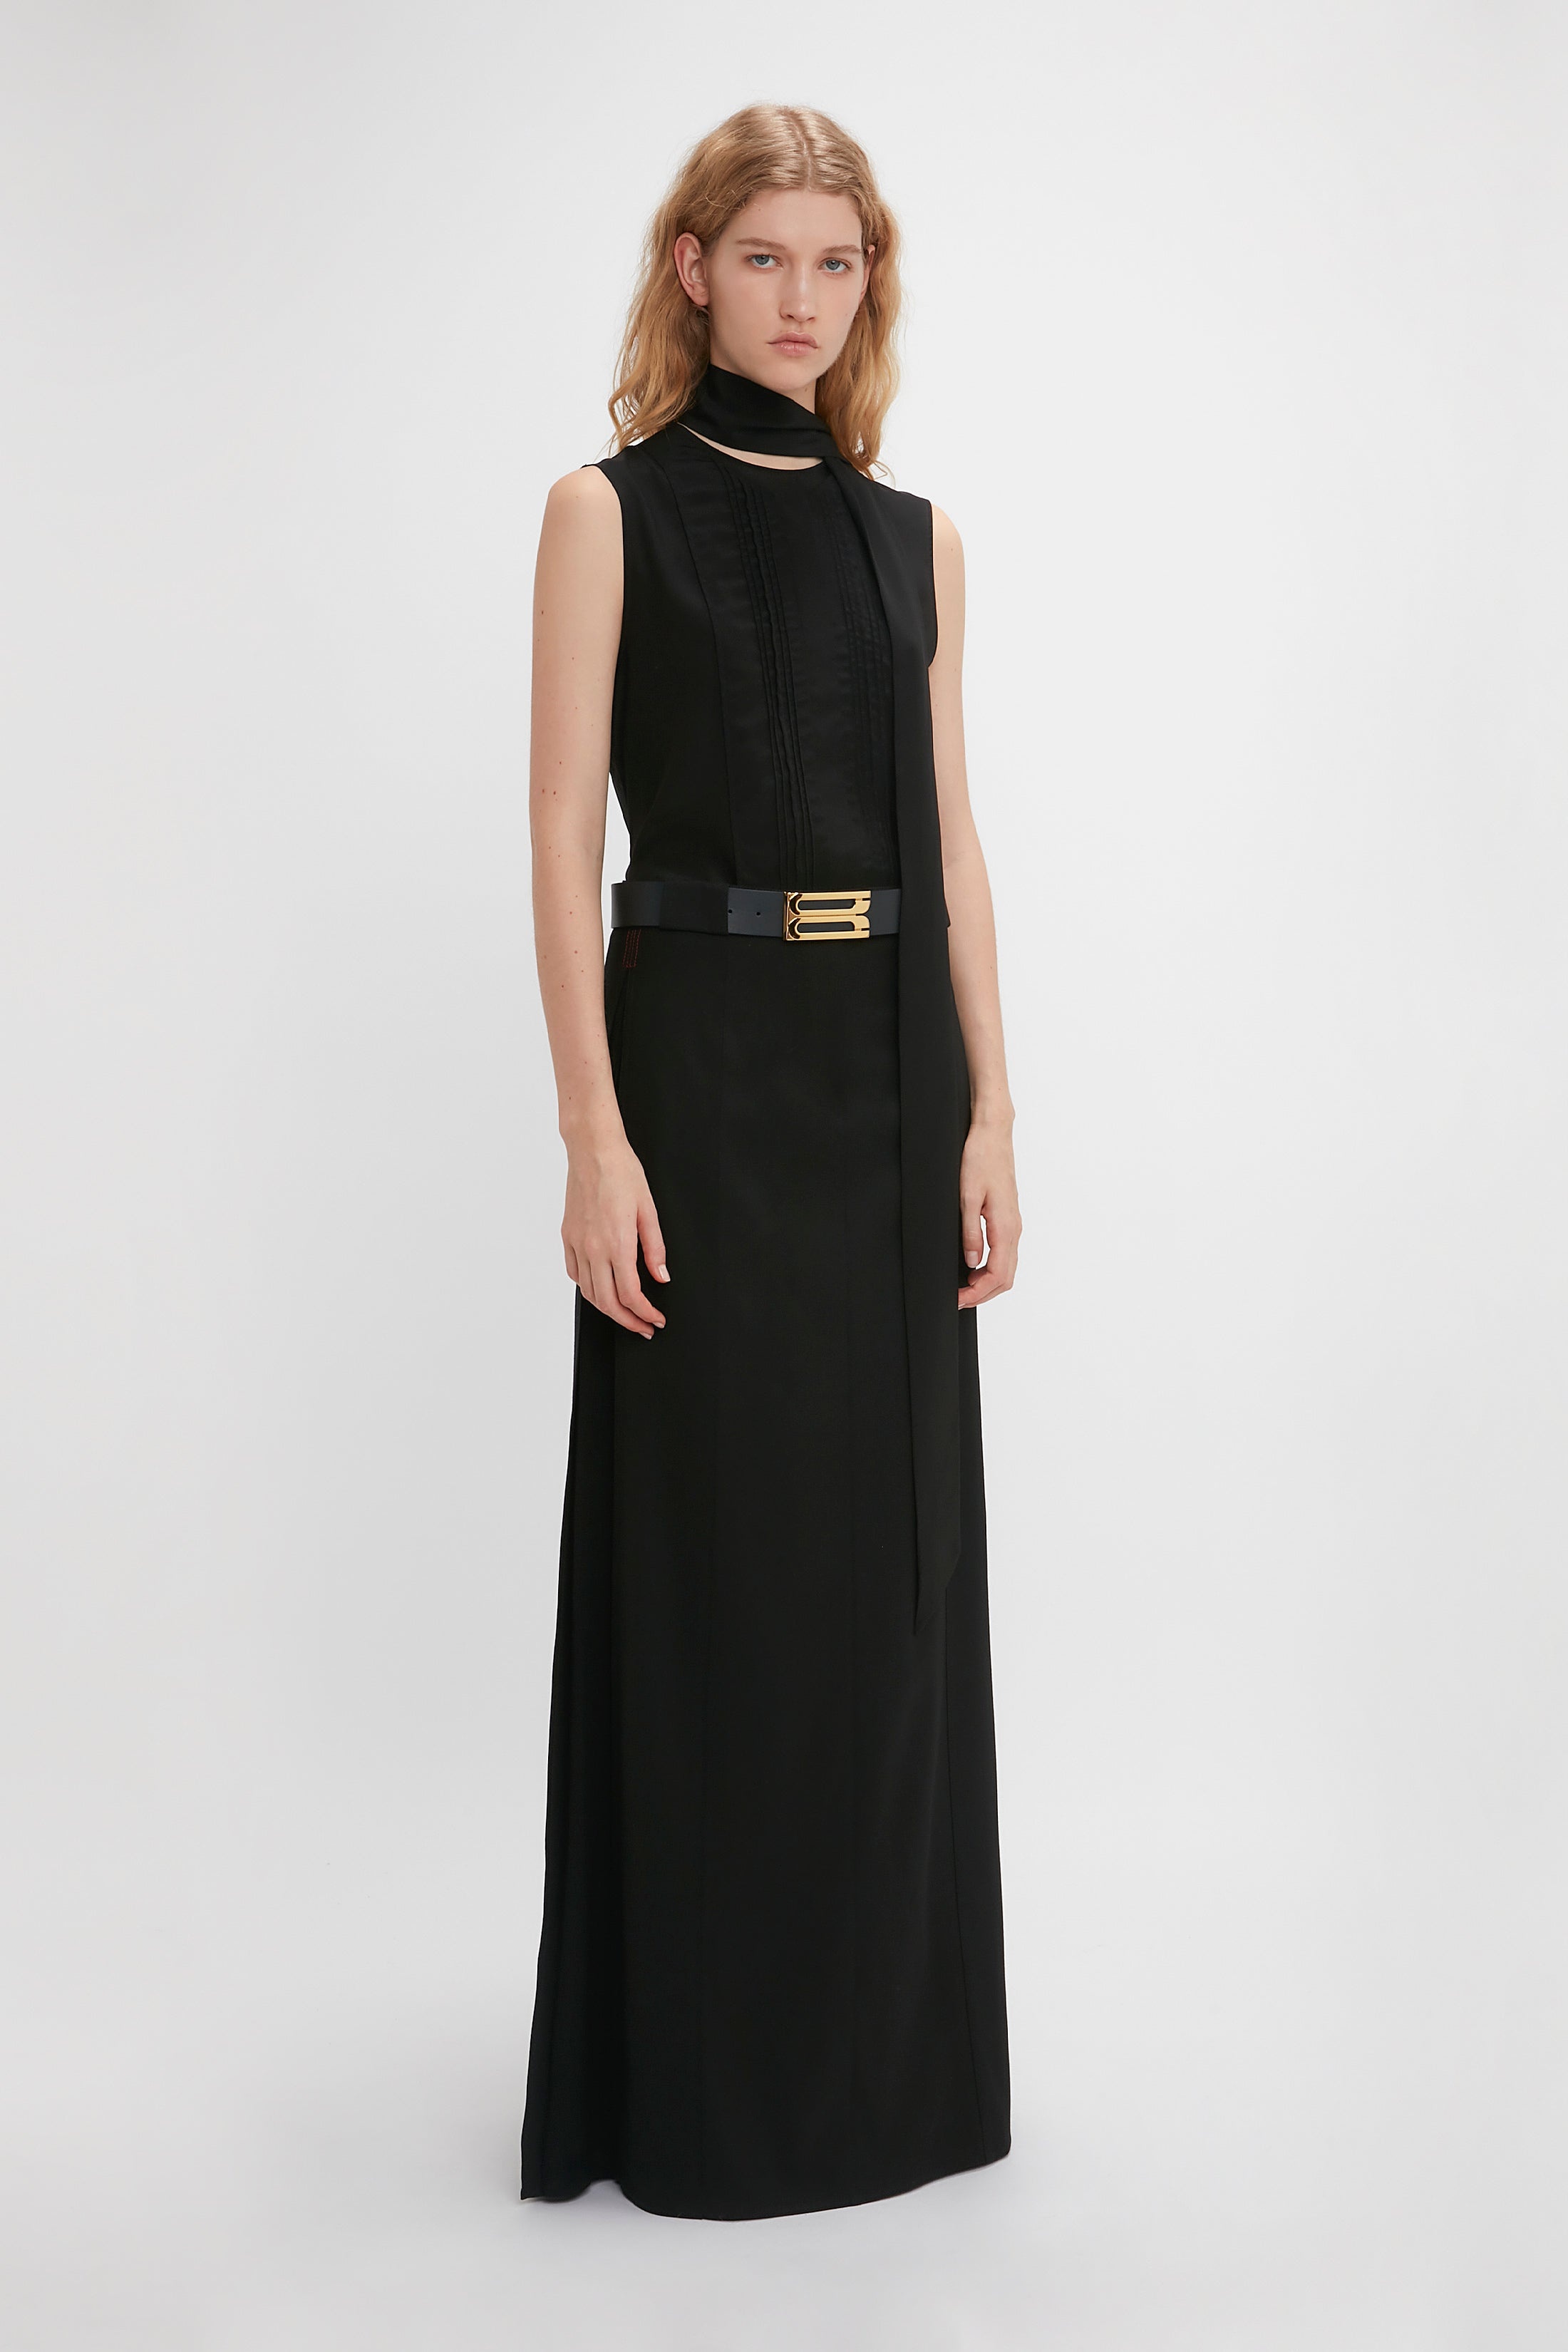 Tailored Floor-Length Skirt In Black - 3